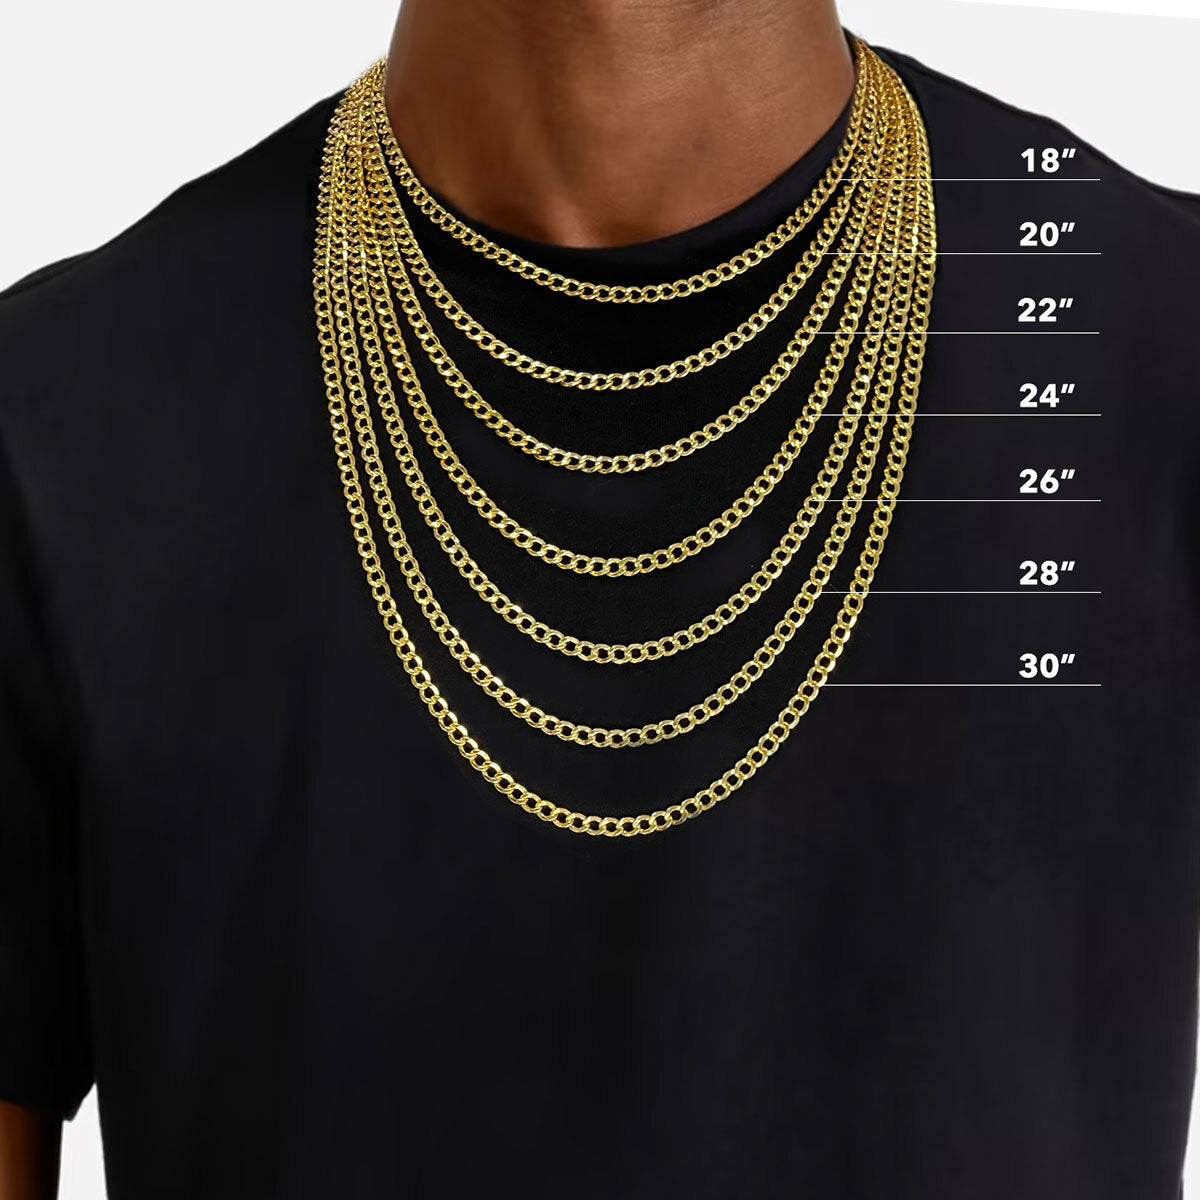 1 3/4" CZ Dallas Cowboys Medallion Pendant & Chain Necklace Set 10K Yellow Gold